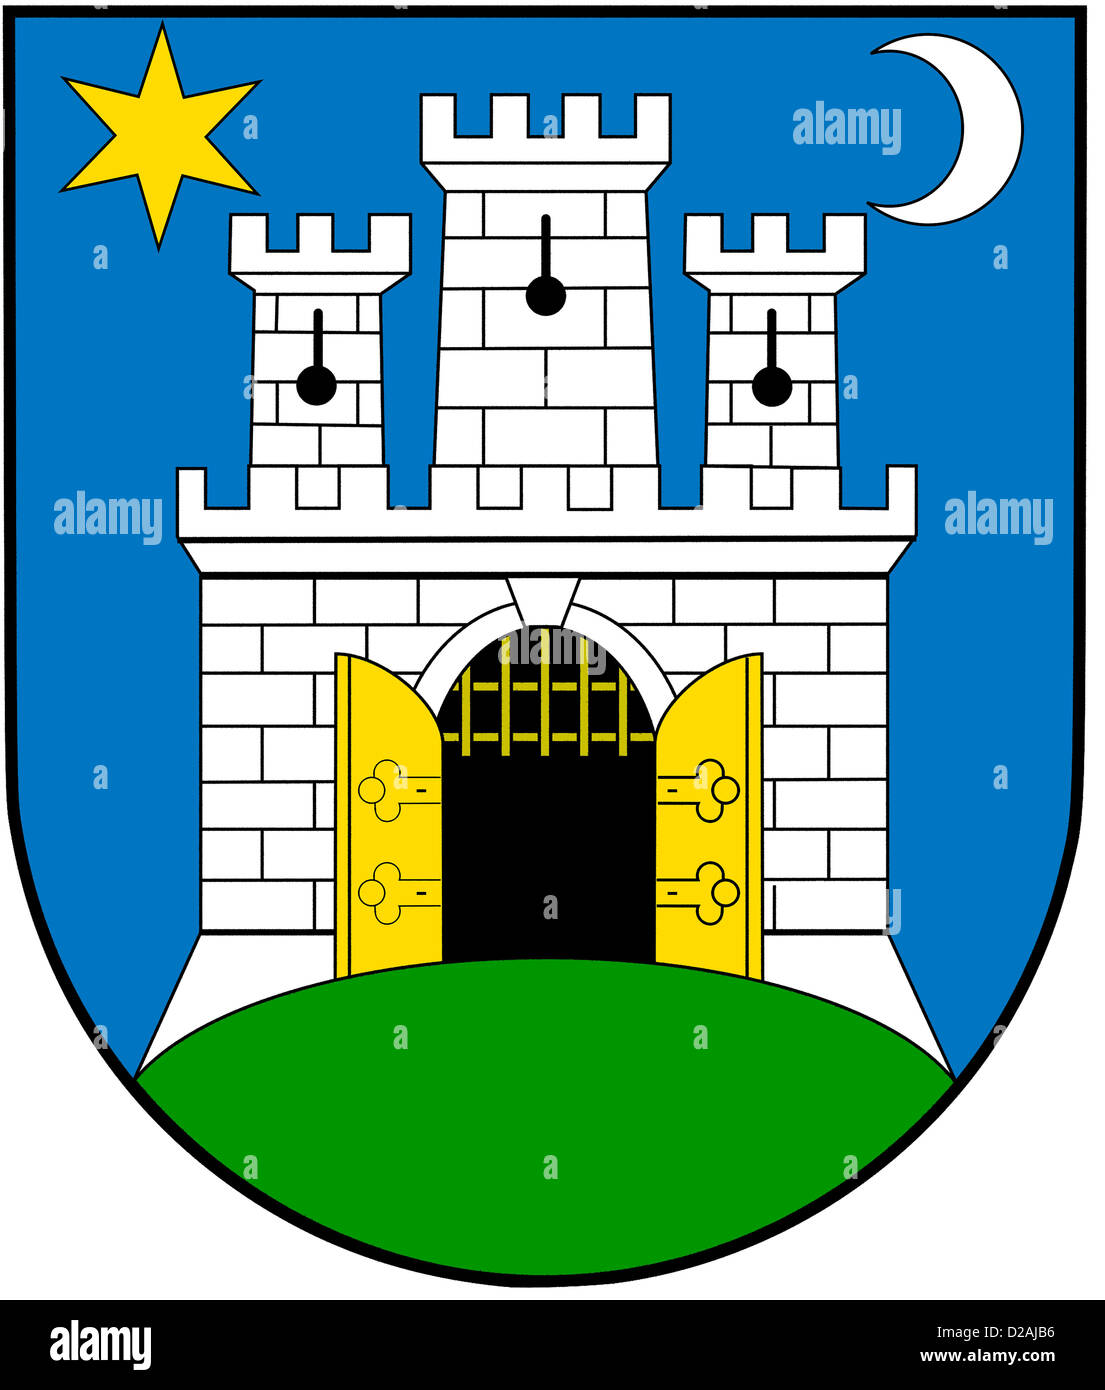 Wappen von der kroatischen Hauptstadt Zagreb. Stockfoto